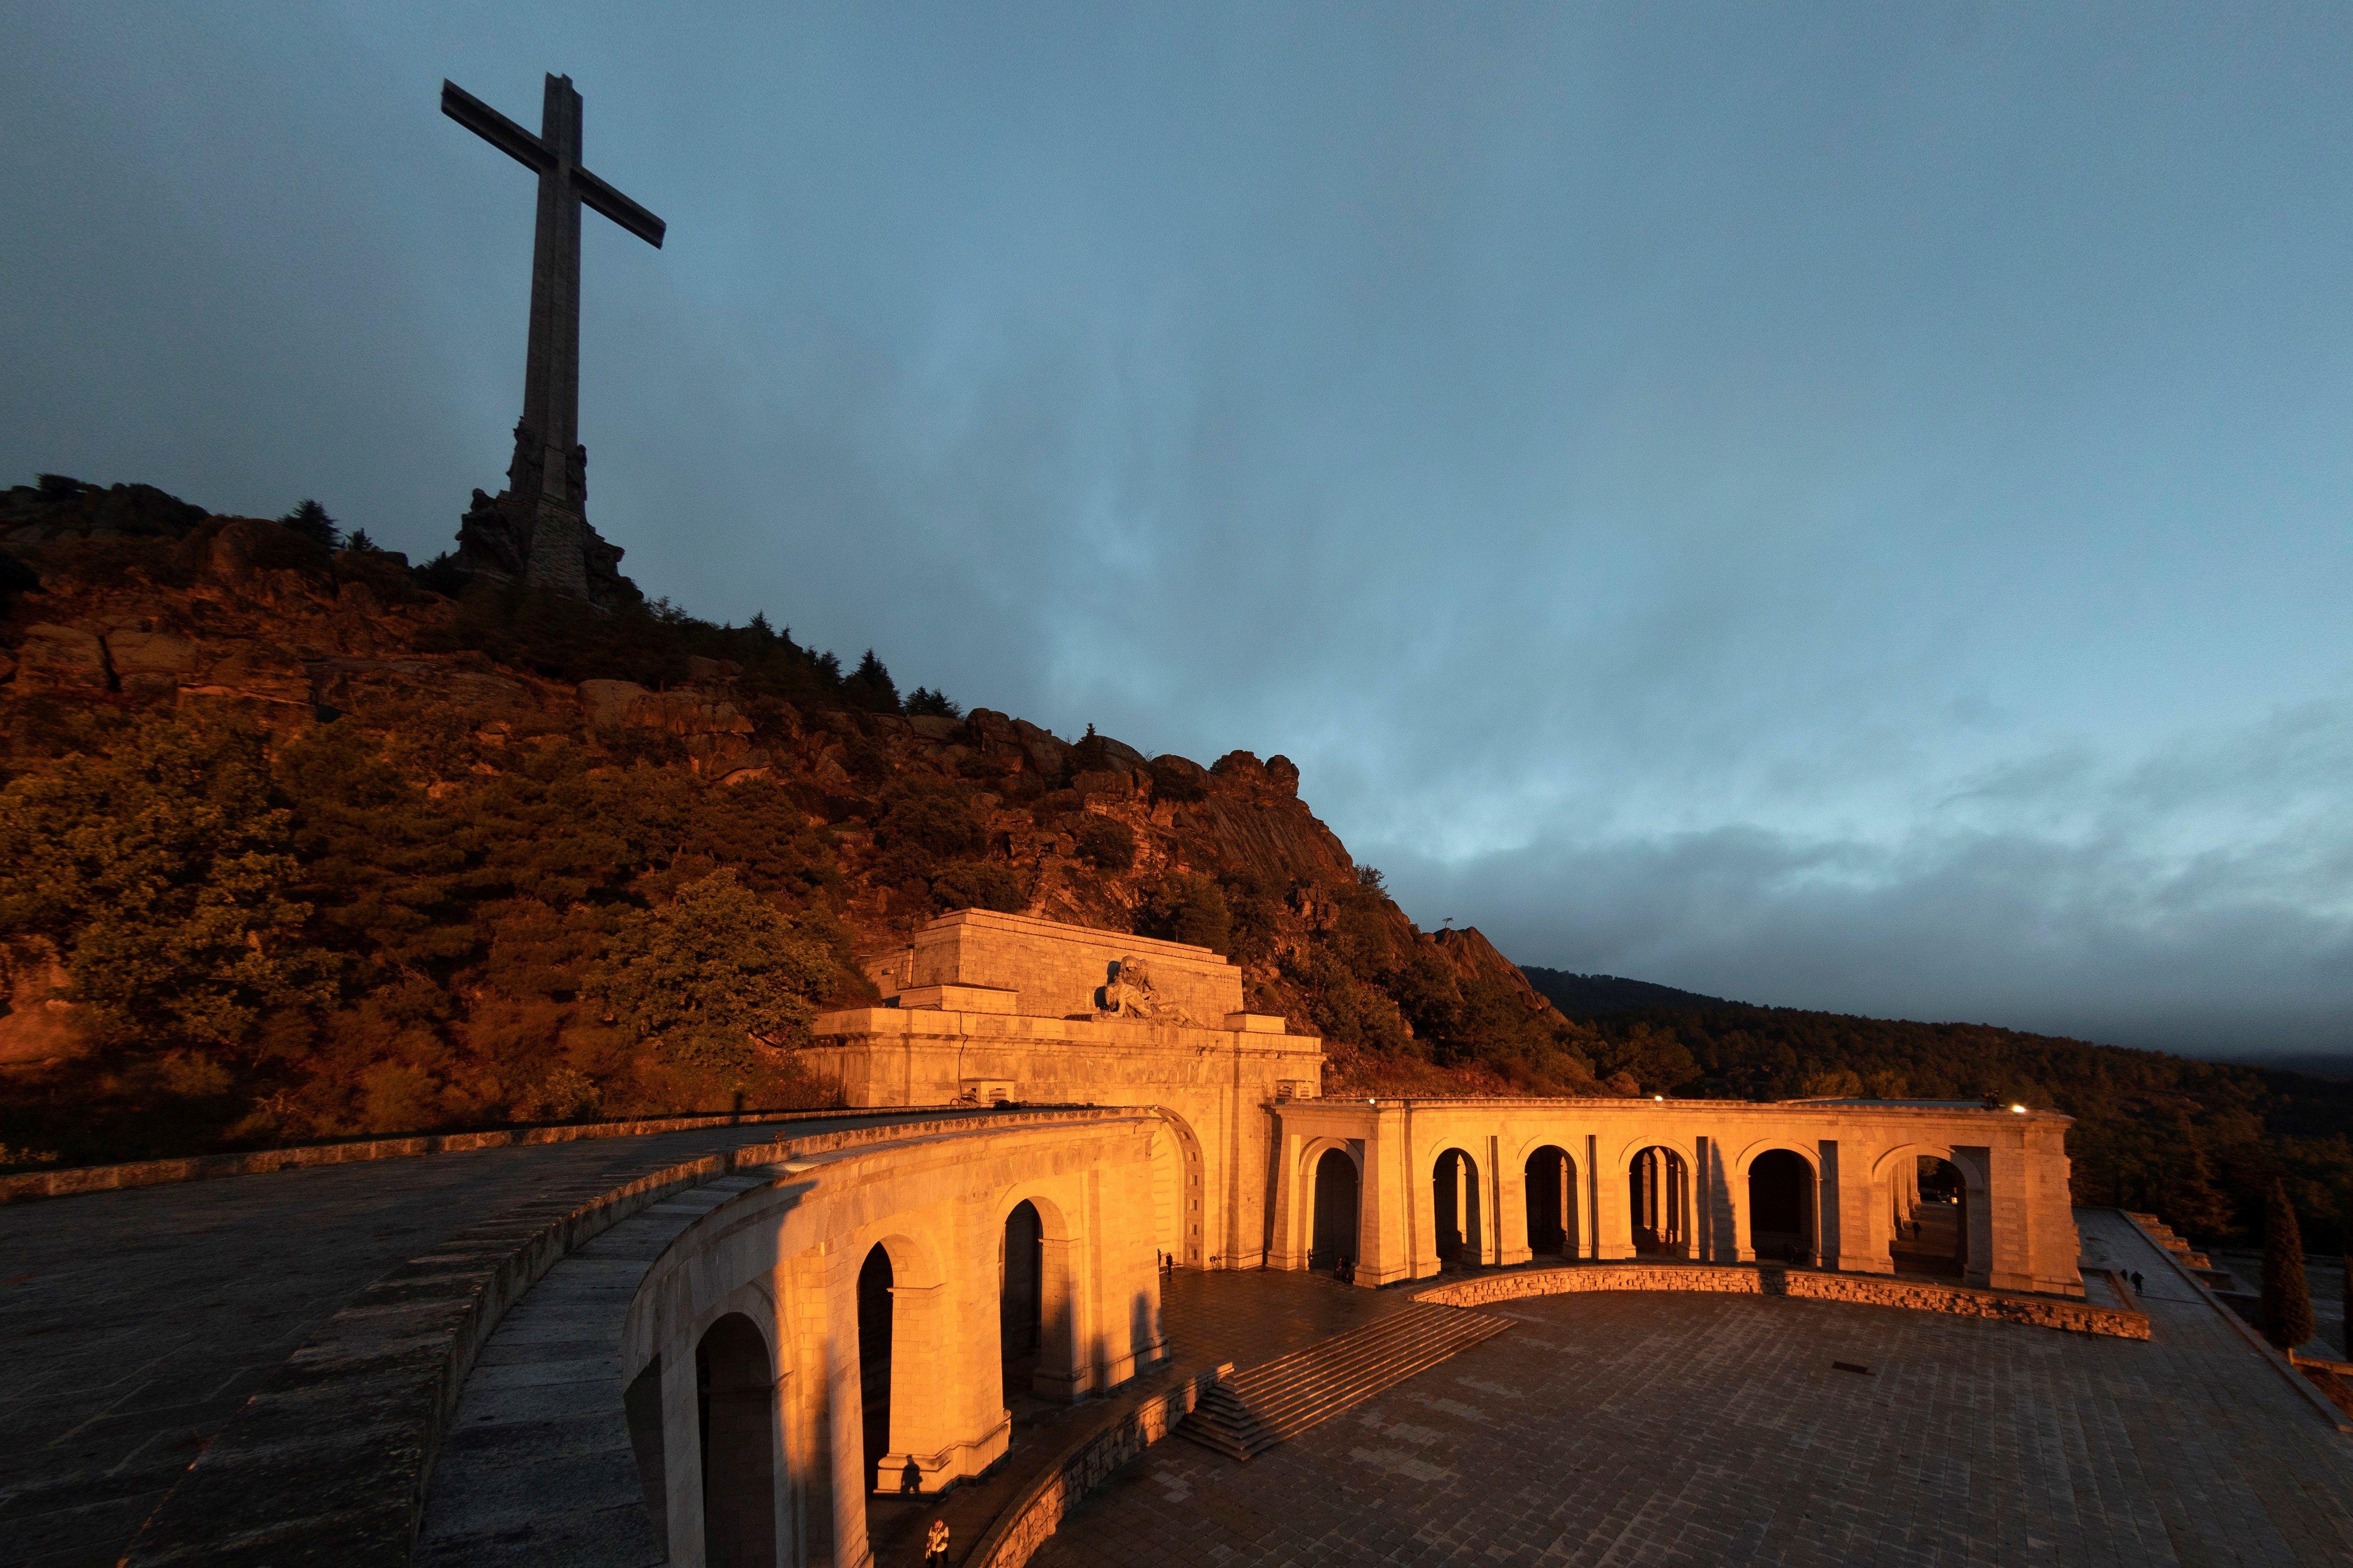 Vista de la explanada de la Basílica del Valle de los Caídos antes de la exhumación de Francisco Franco